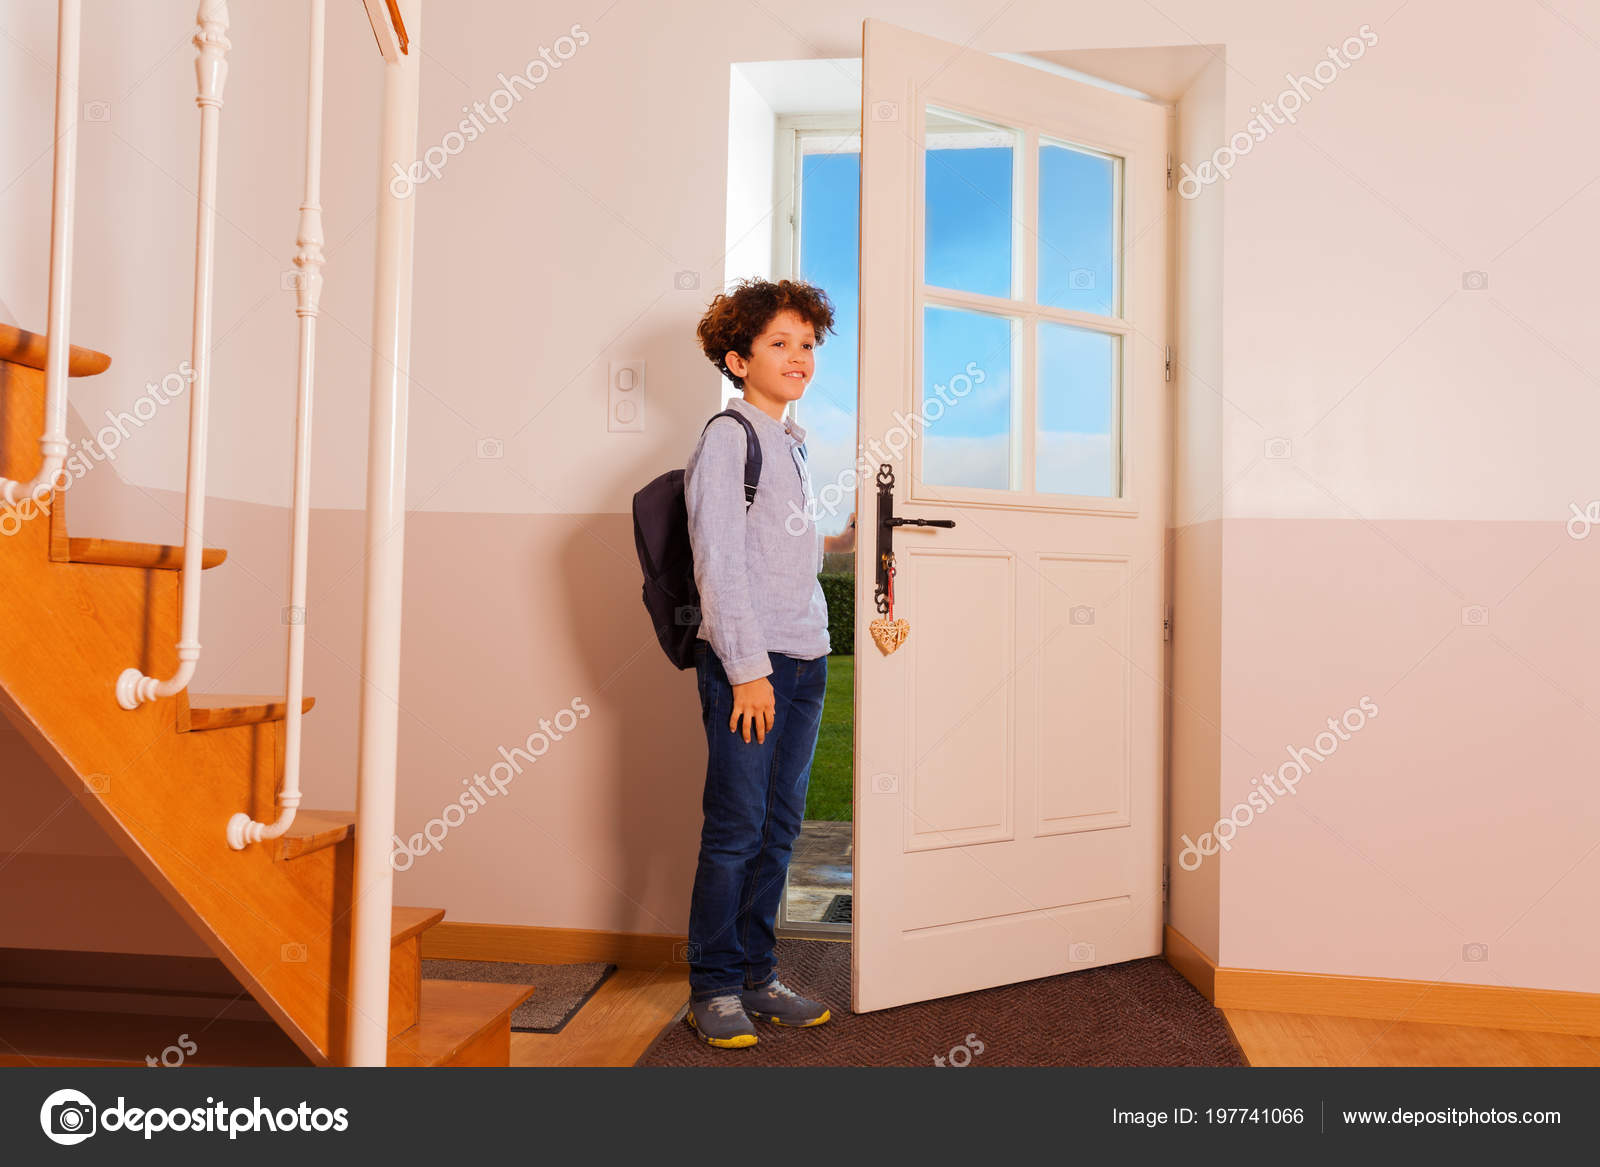 Backing home. Мальчик в коридоре. Школьник заглядывает в дверь. Мальчик приходит из школы домой. Человек стоит в дверном проеме.